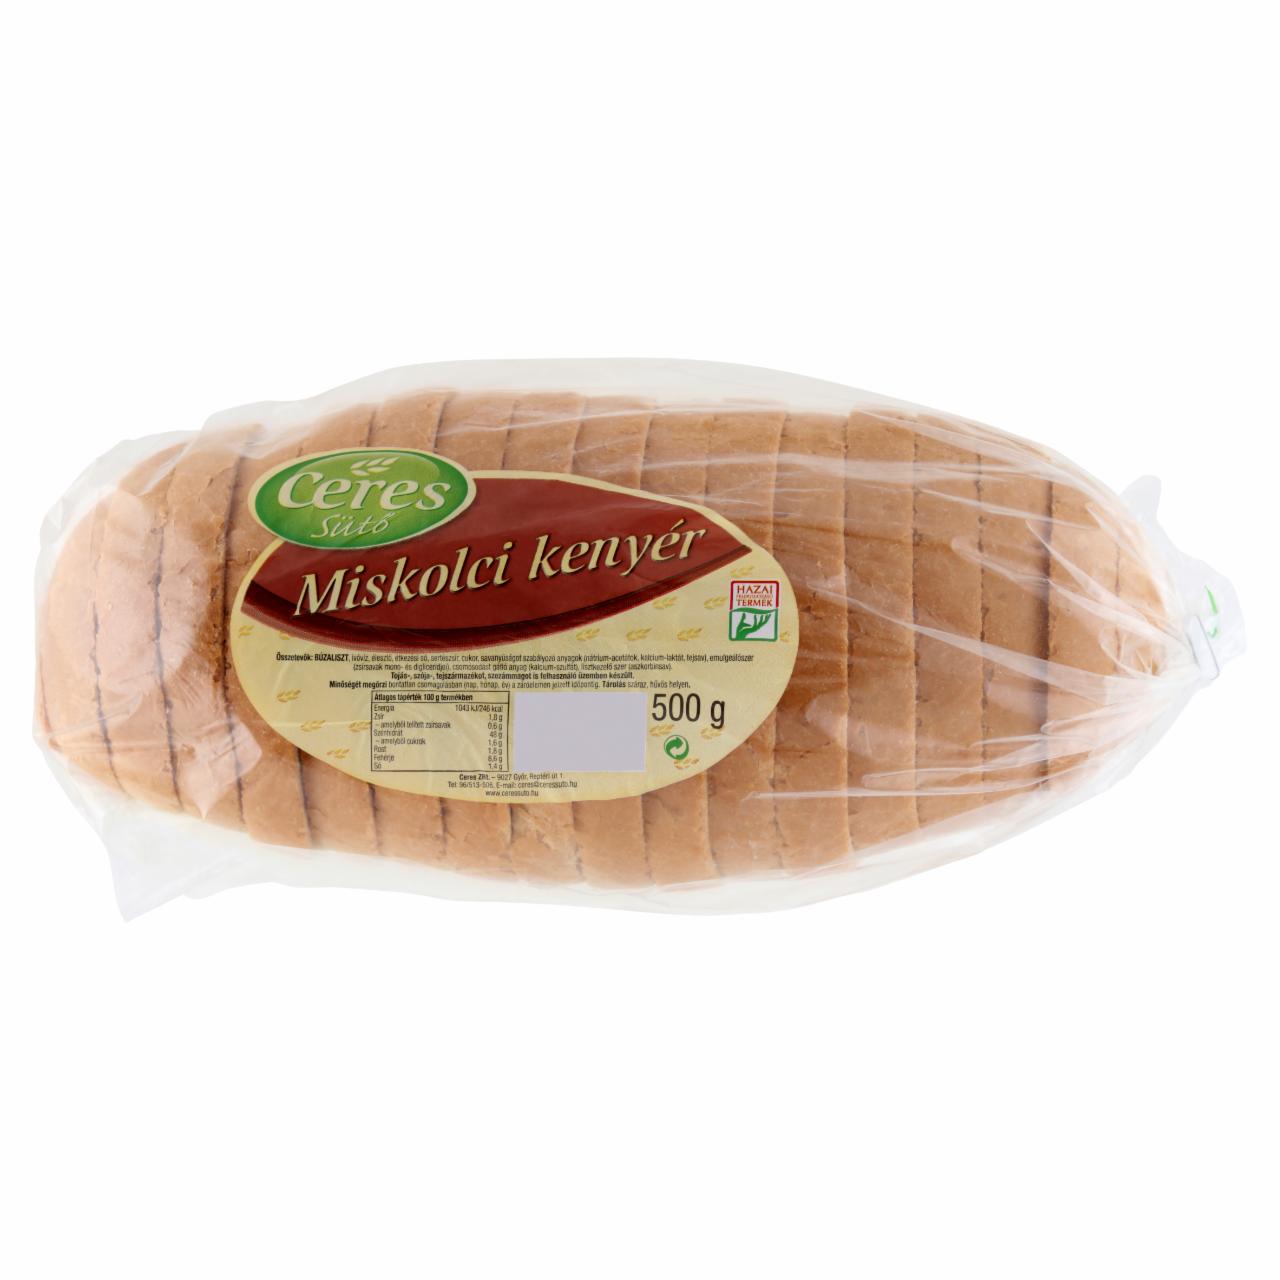 Képek - Ceres Sütő miskolci kenyér 500 g